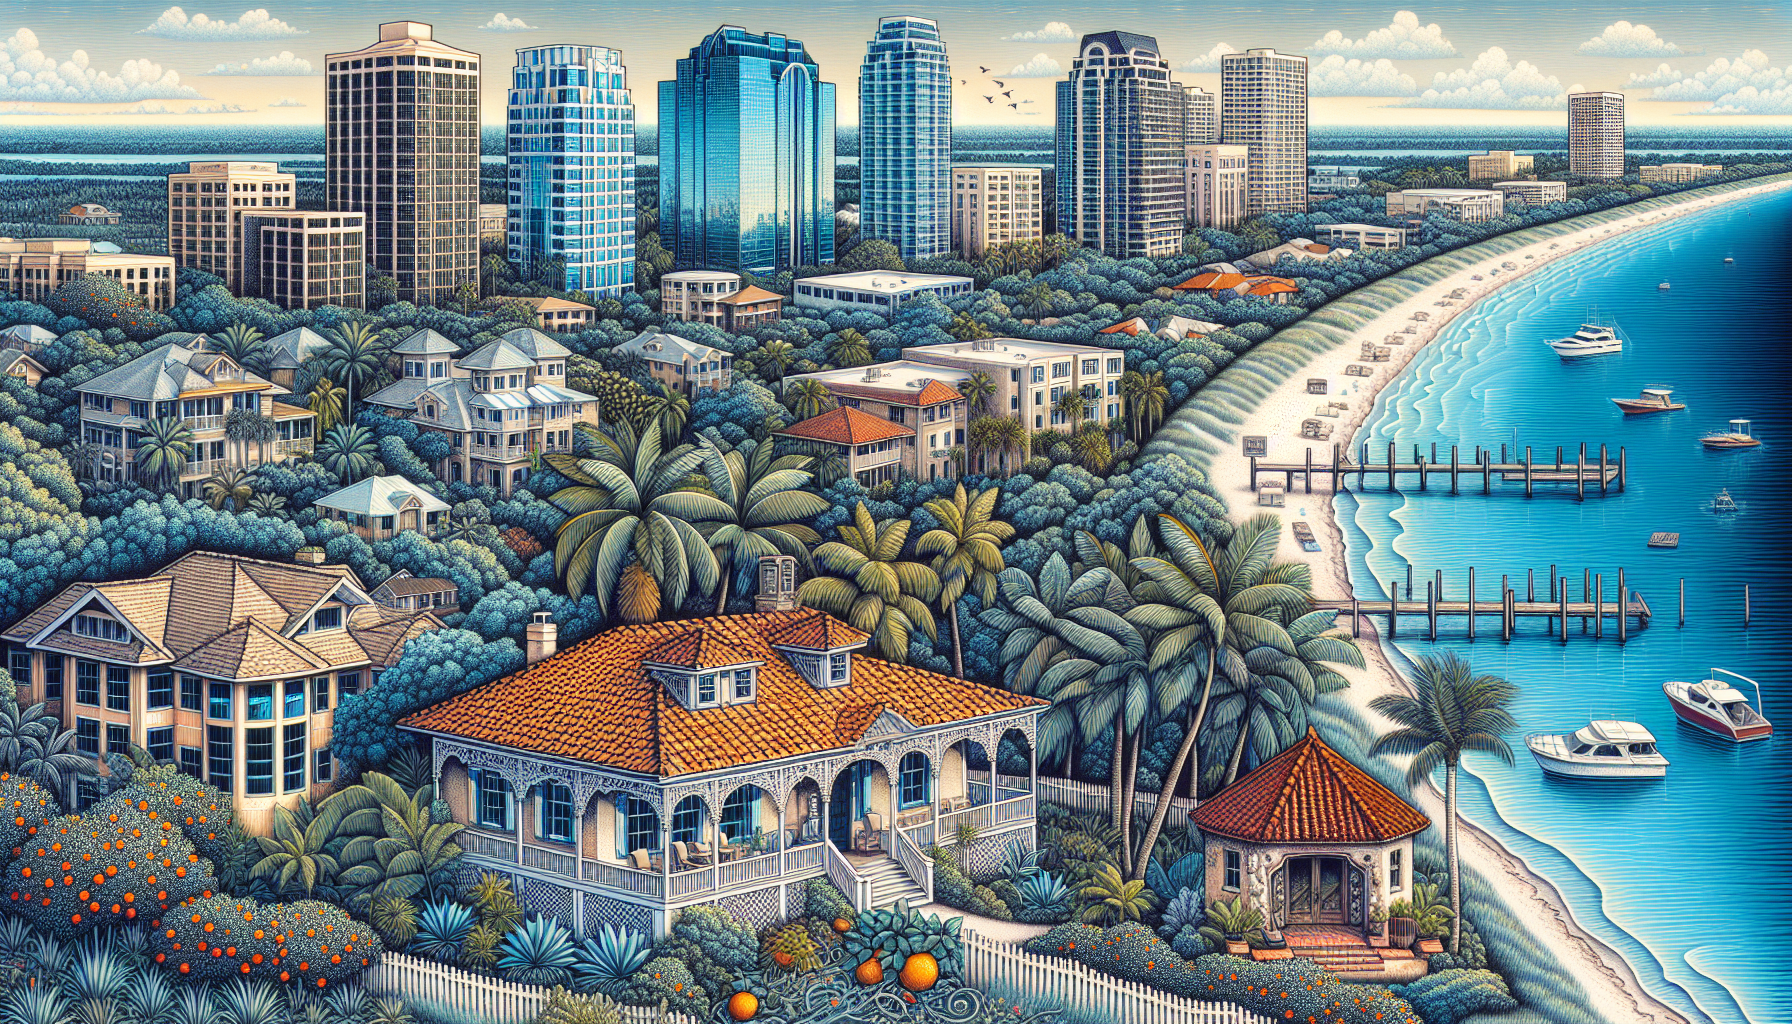 Illustration of Florida real estate landscape